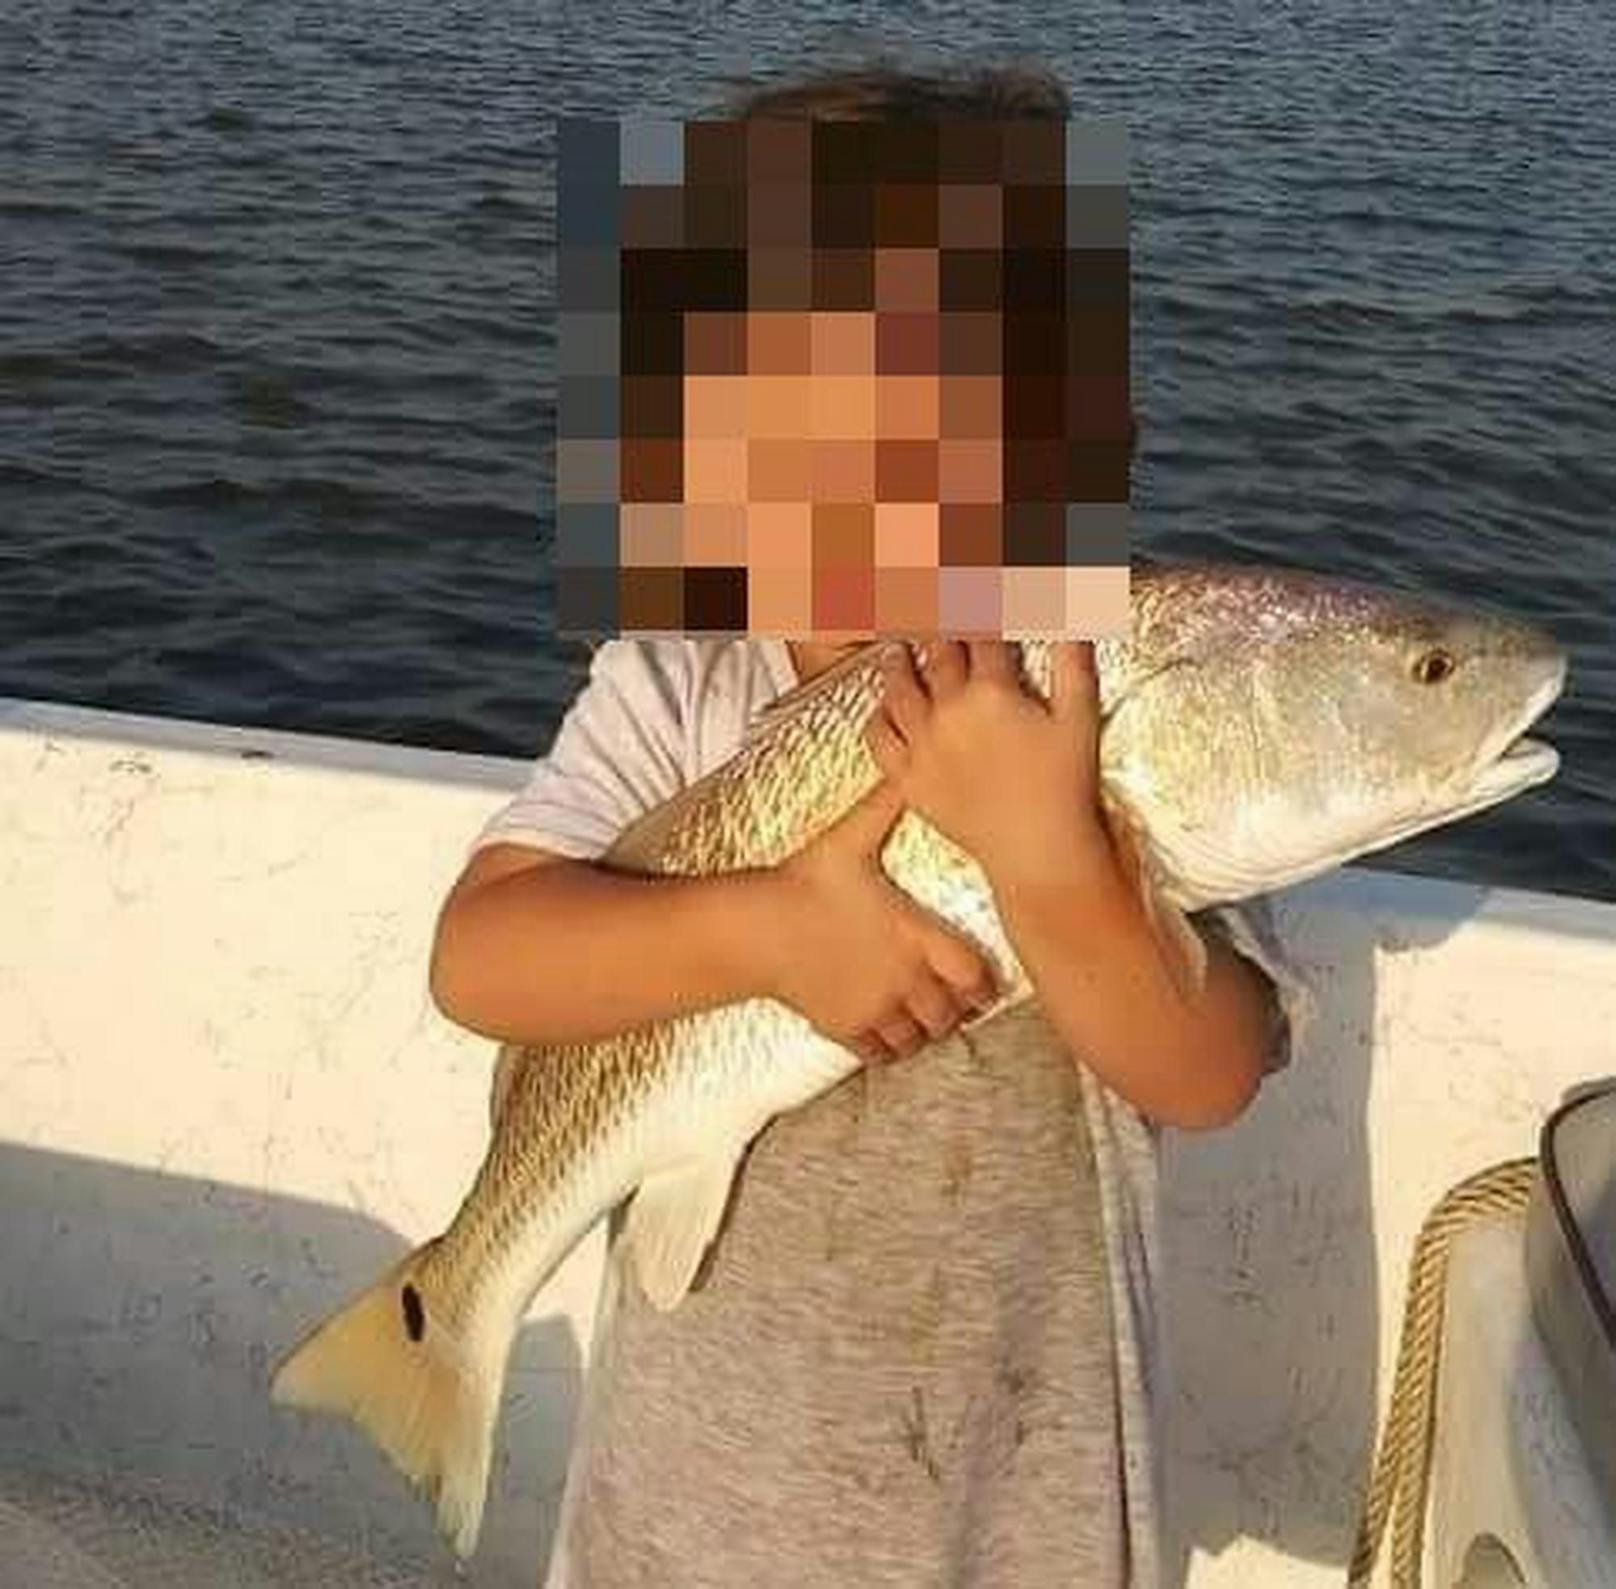 Die vierjährige Kali Cook starb nach einer Infektion mit dem Coronavirus.